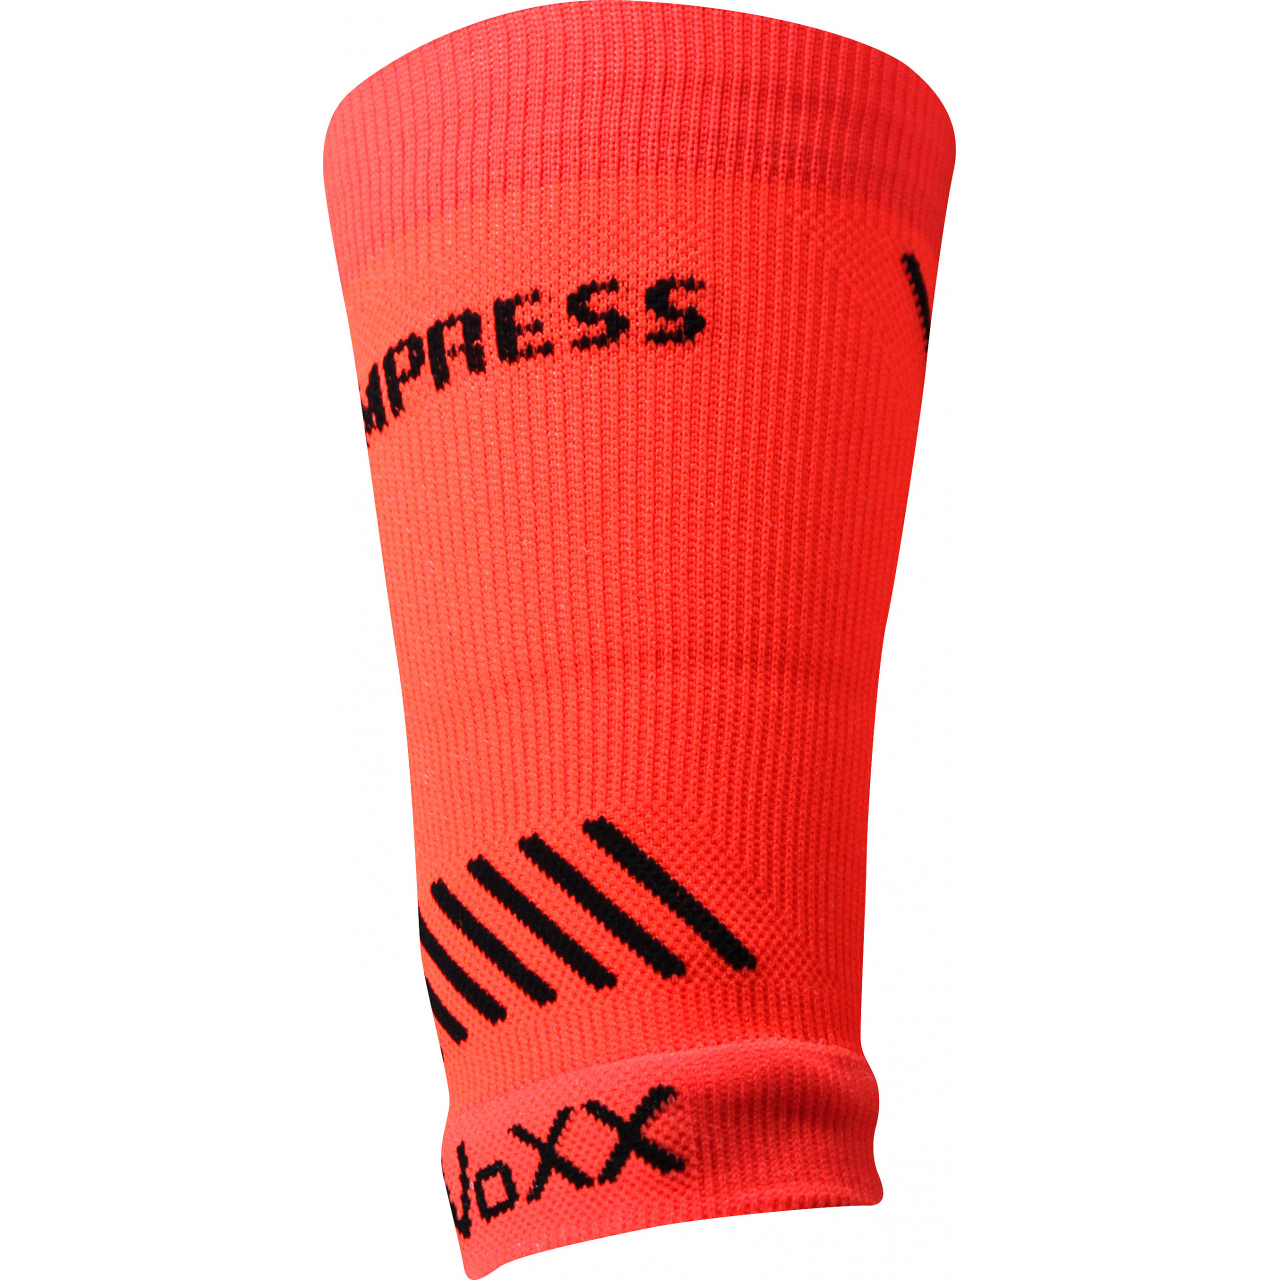 Návlek kompresní Voxx Protect zápěstí - oranžový svítící, L/XL